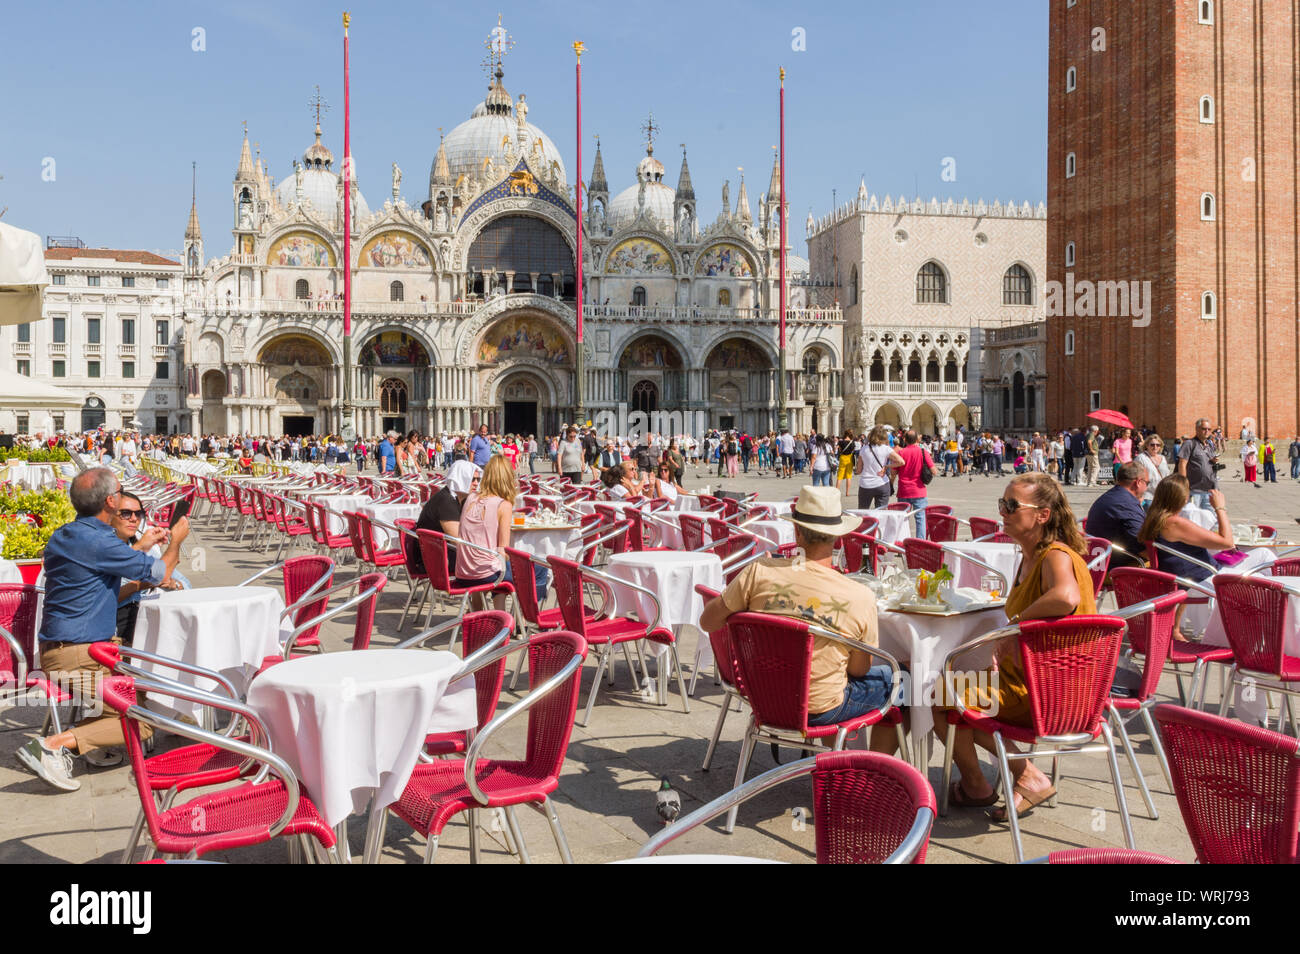 Venecia, Italia (7h de septiembre de 2019) - Los turistas tomando una copa en uno de los bares de la hermosa Piazza San Marco Foto de stock